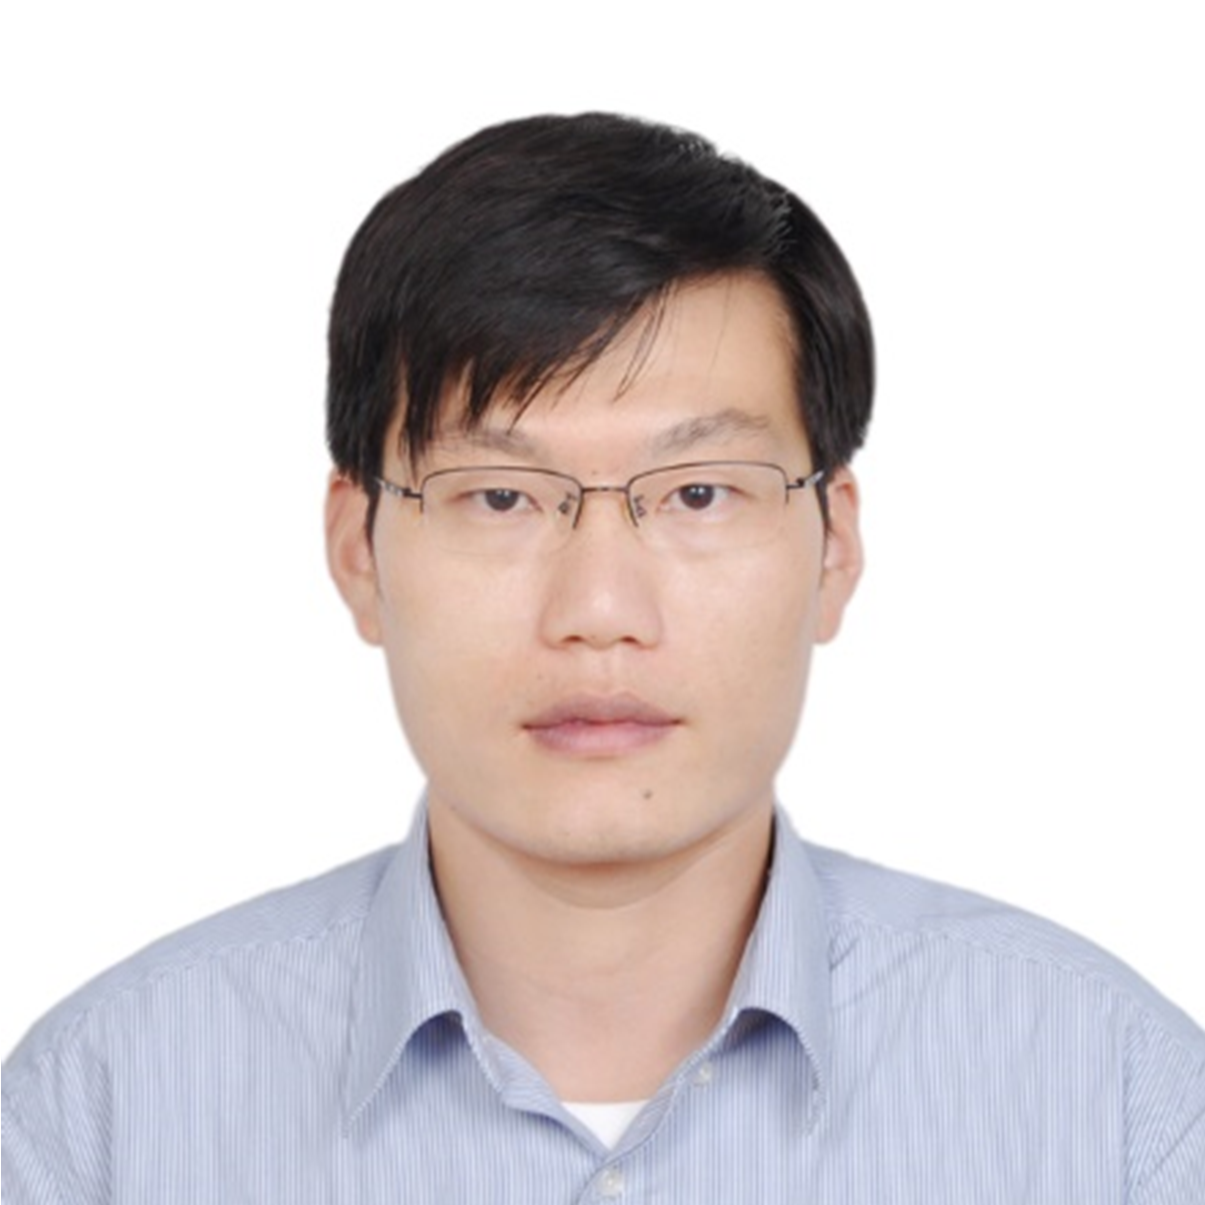 Dr. Zhiwei Liu (刘志伟), Ph.D